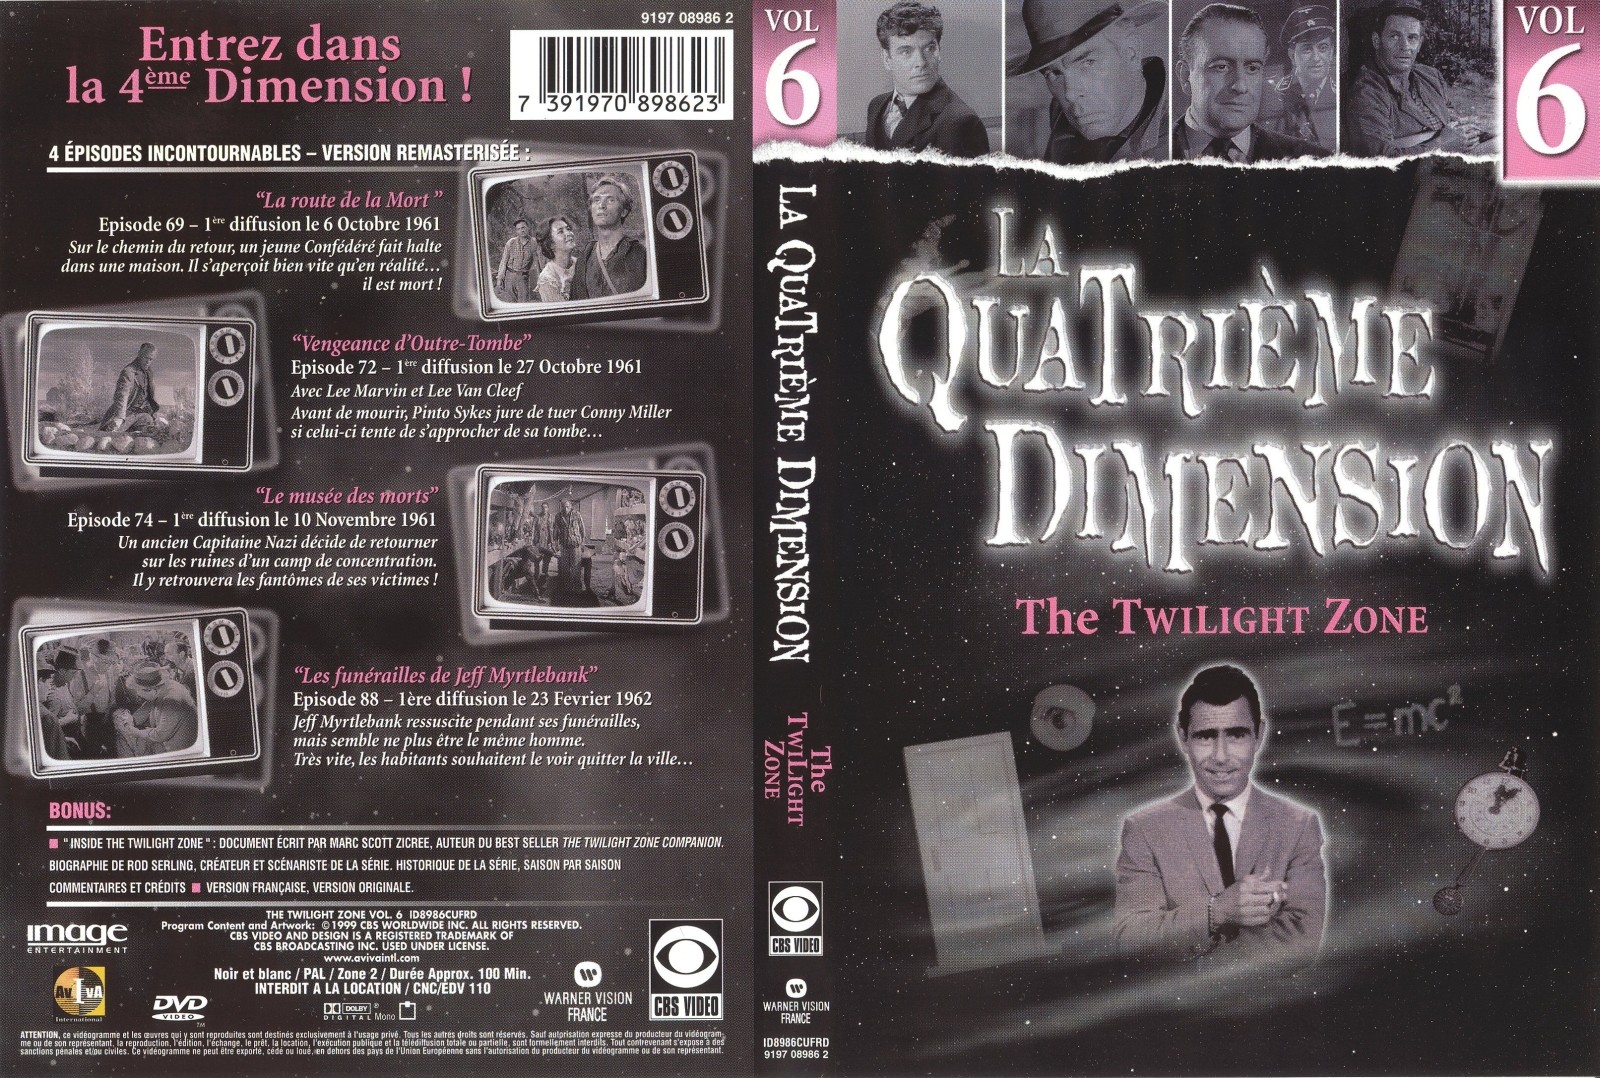 Jaquette DVD La quatrieme dimension vol 6